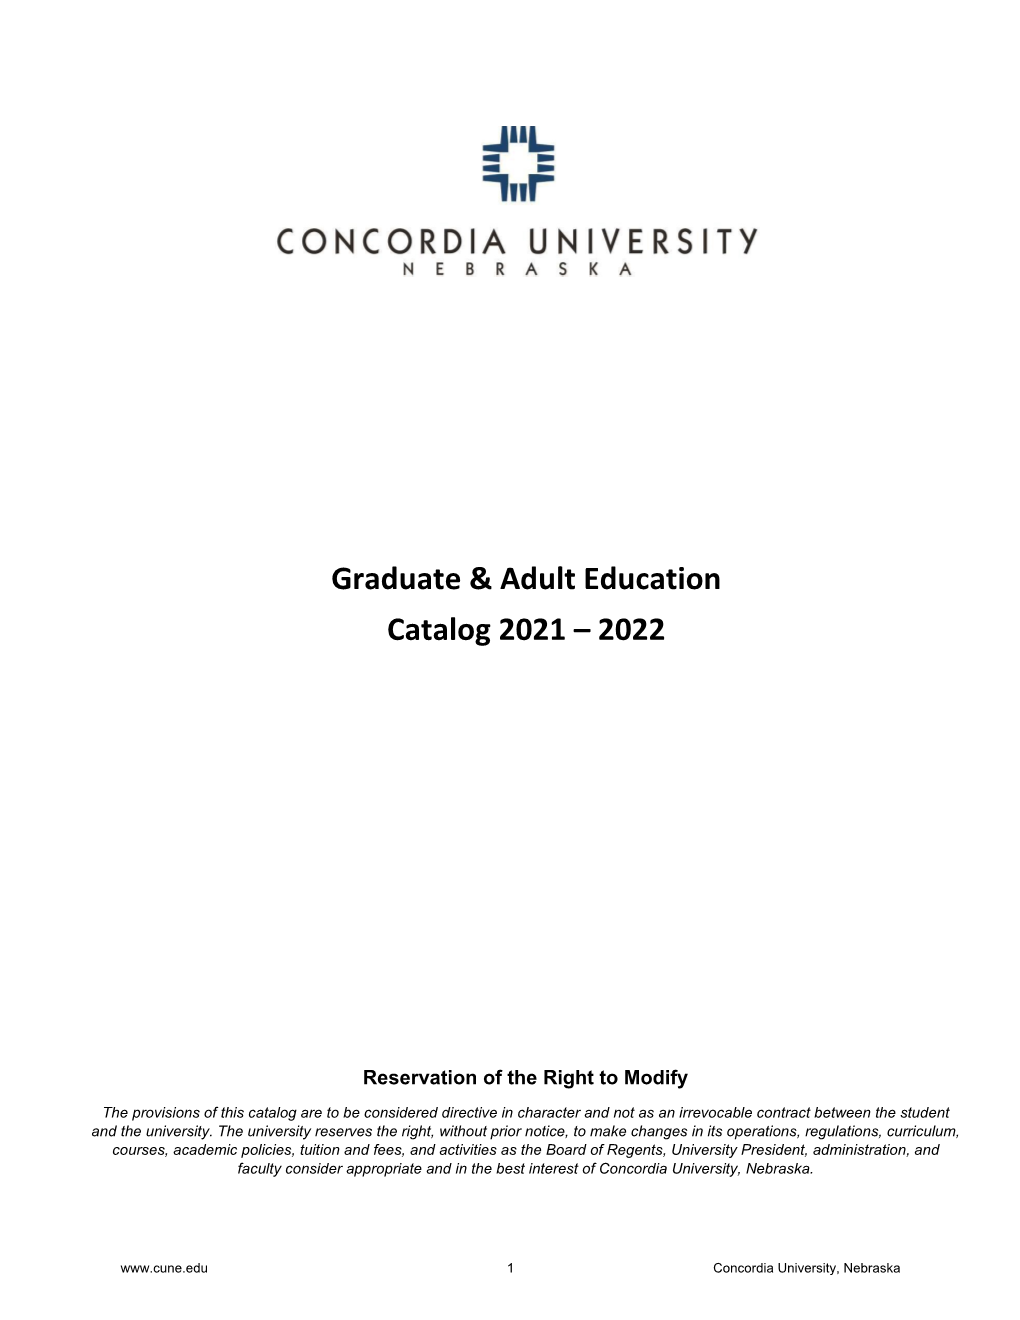 Graduate & Adult Education Catalog 2020 – 2021